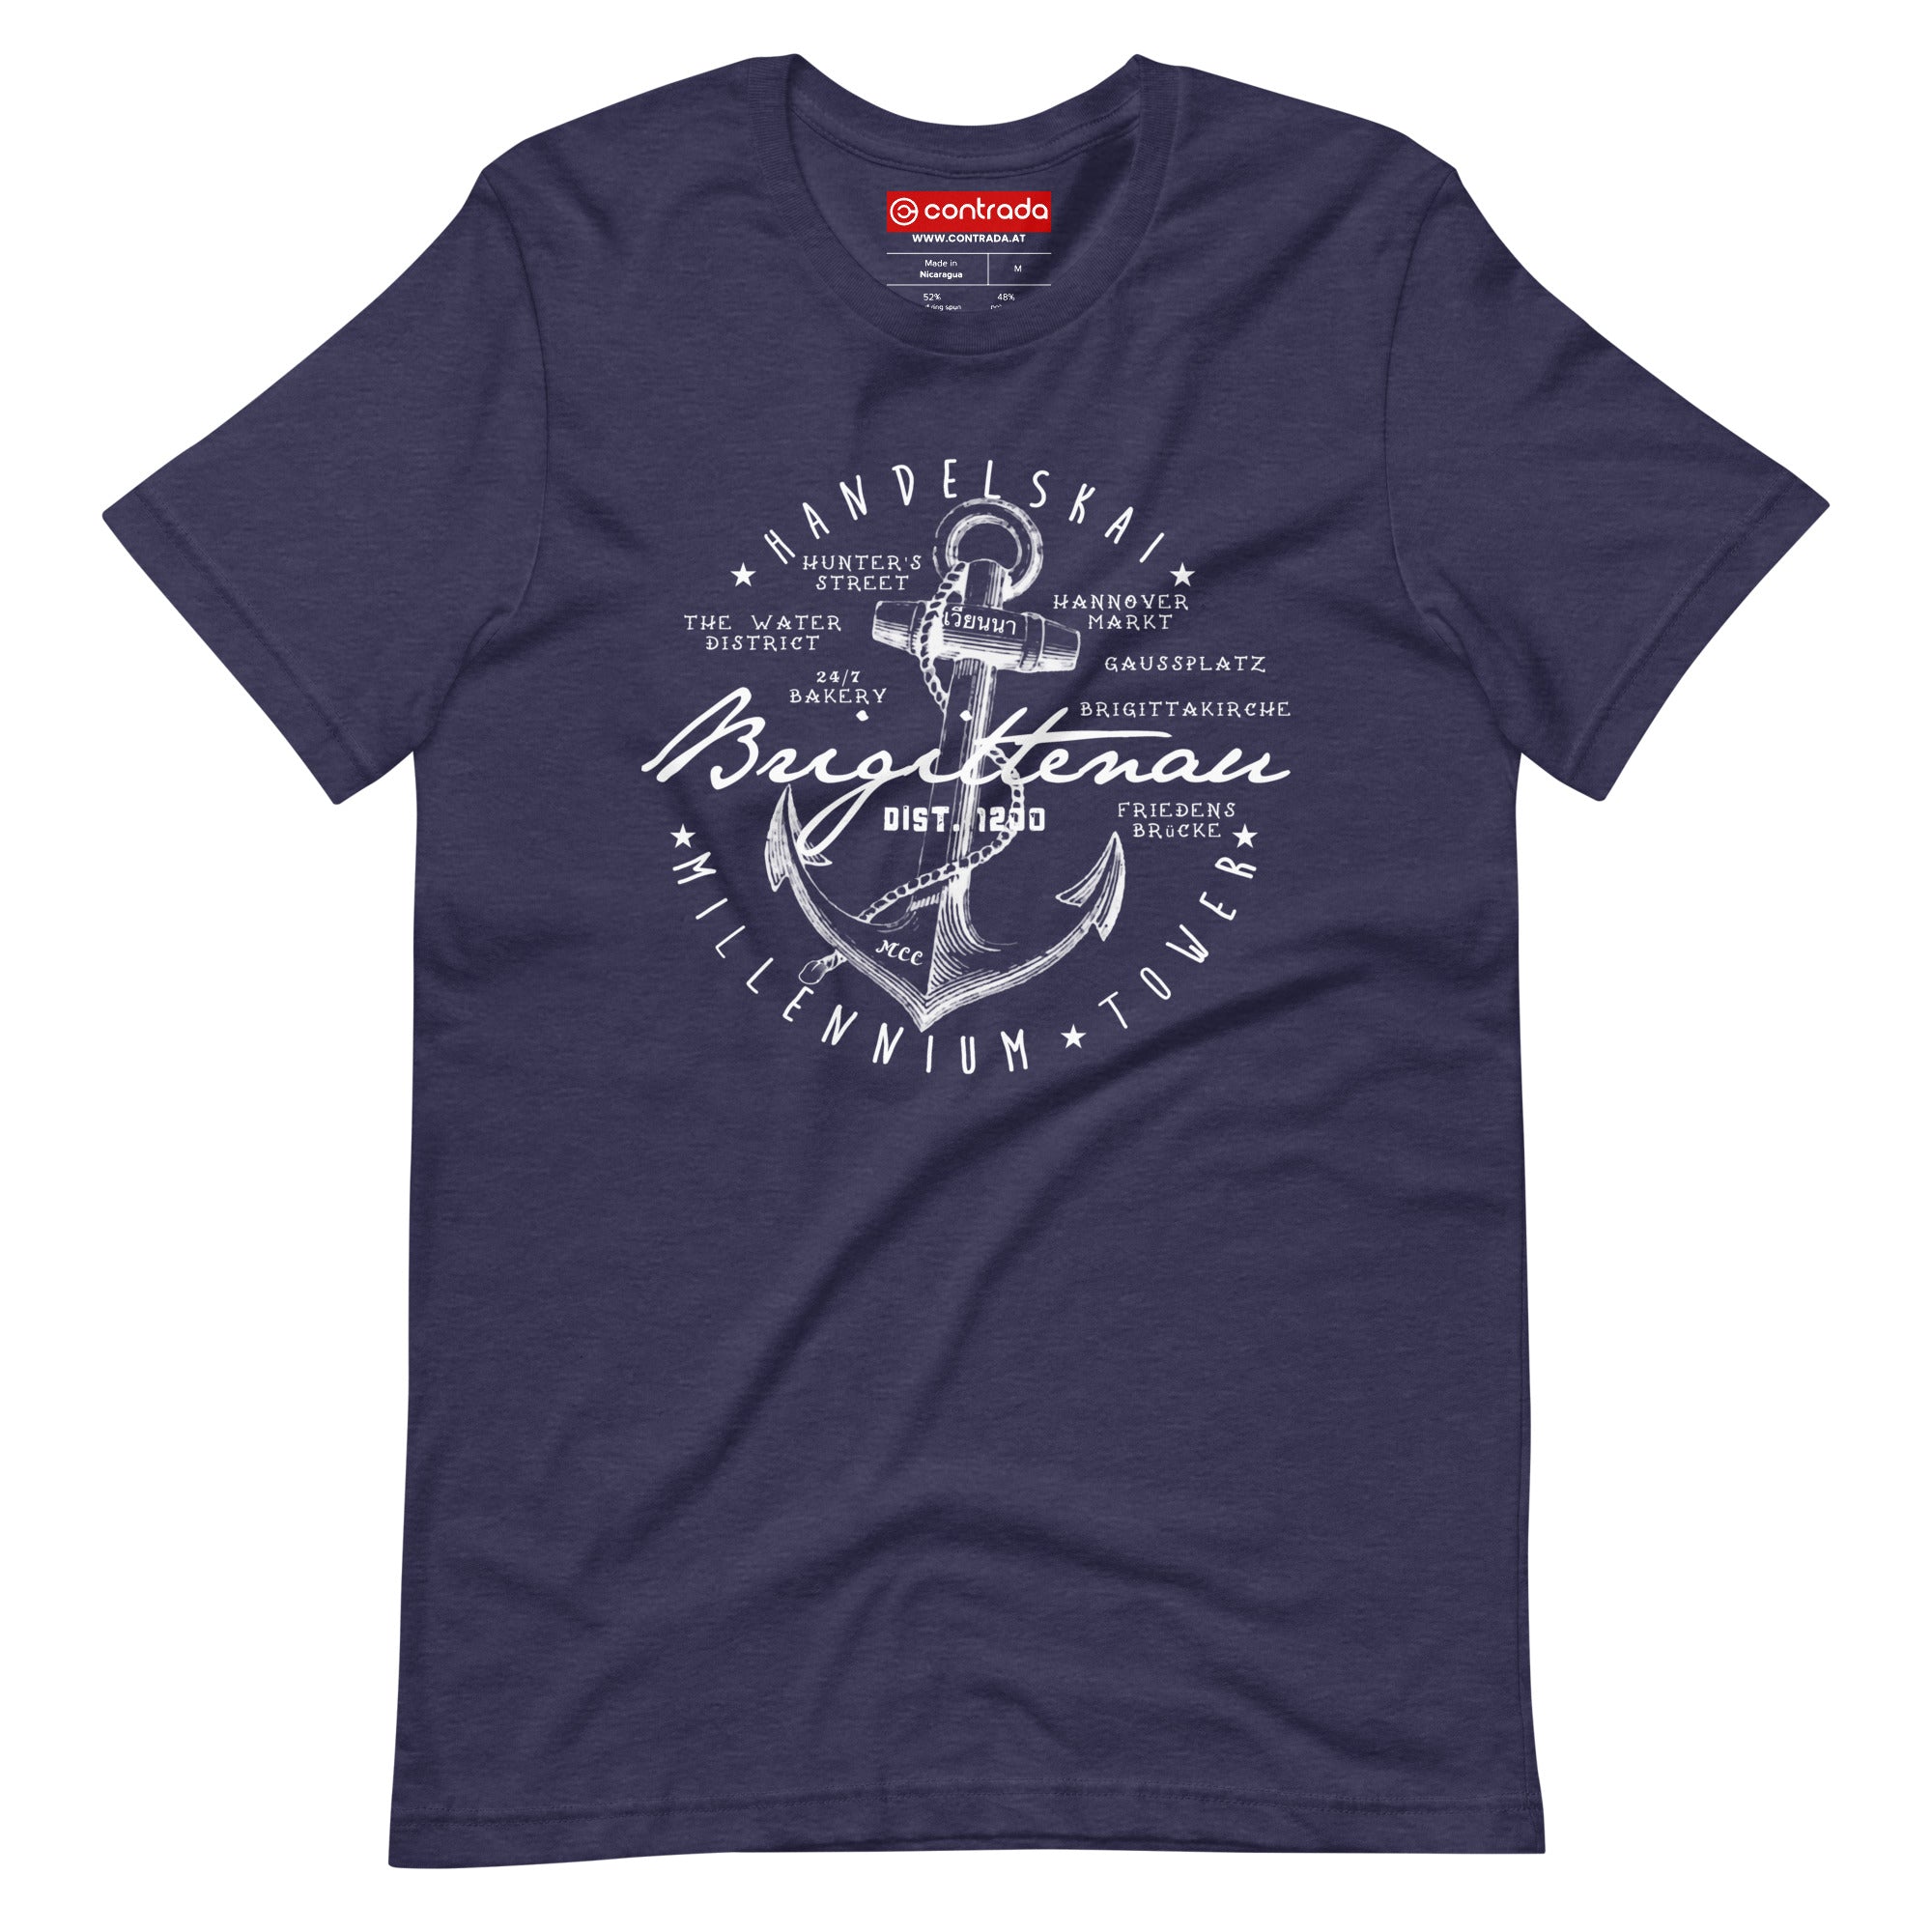 20., Brigittenau, Wien, „Americana“, Modern Basic T-Shirt